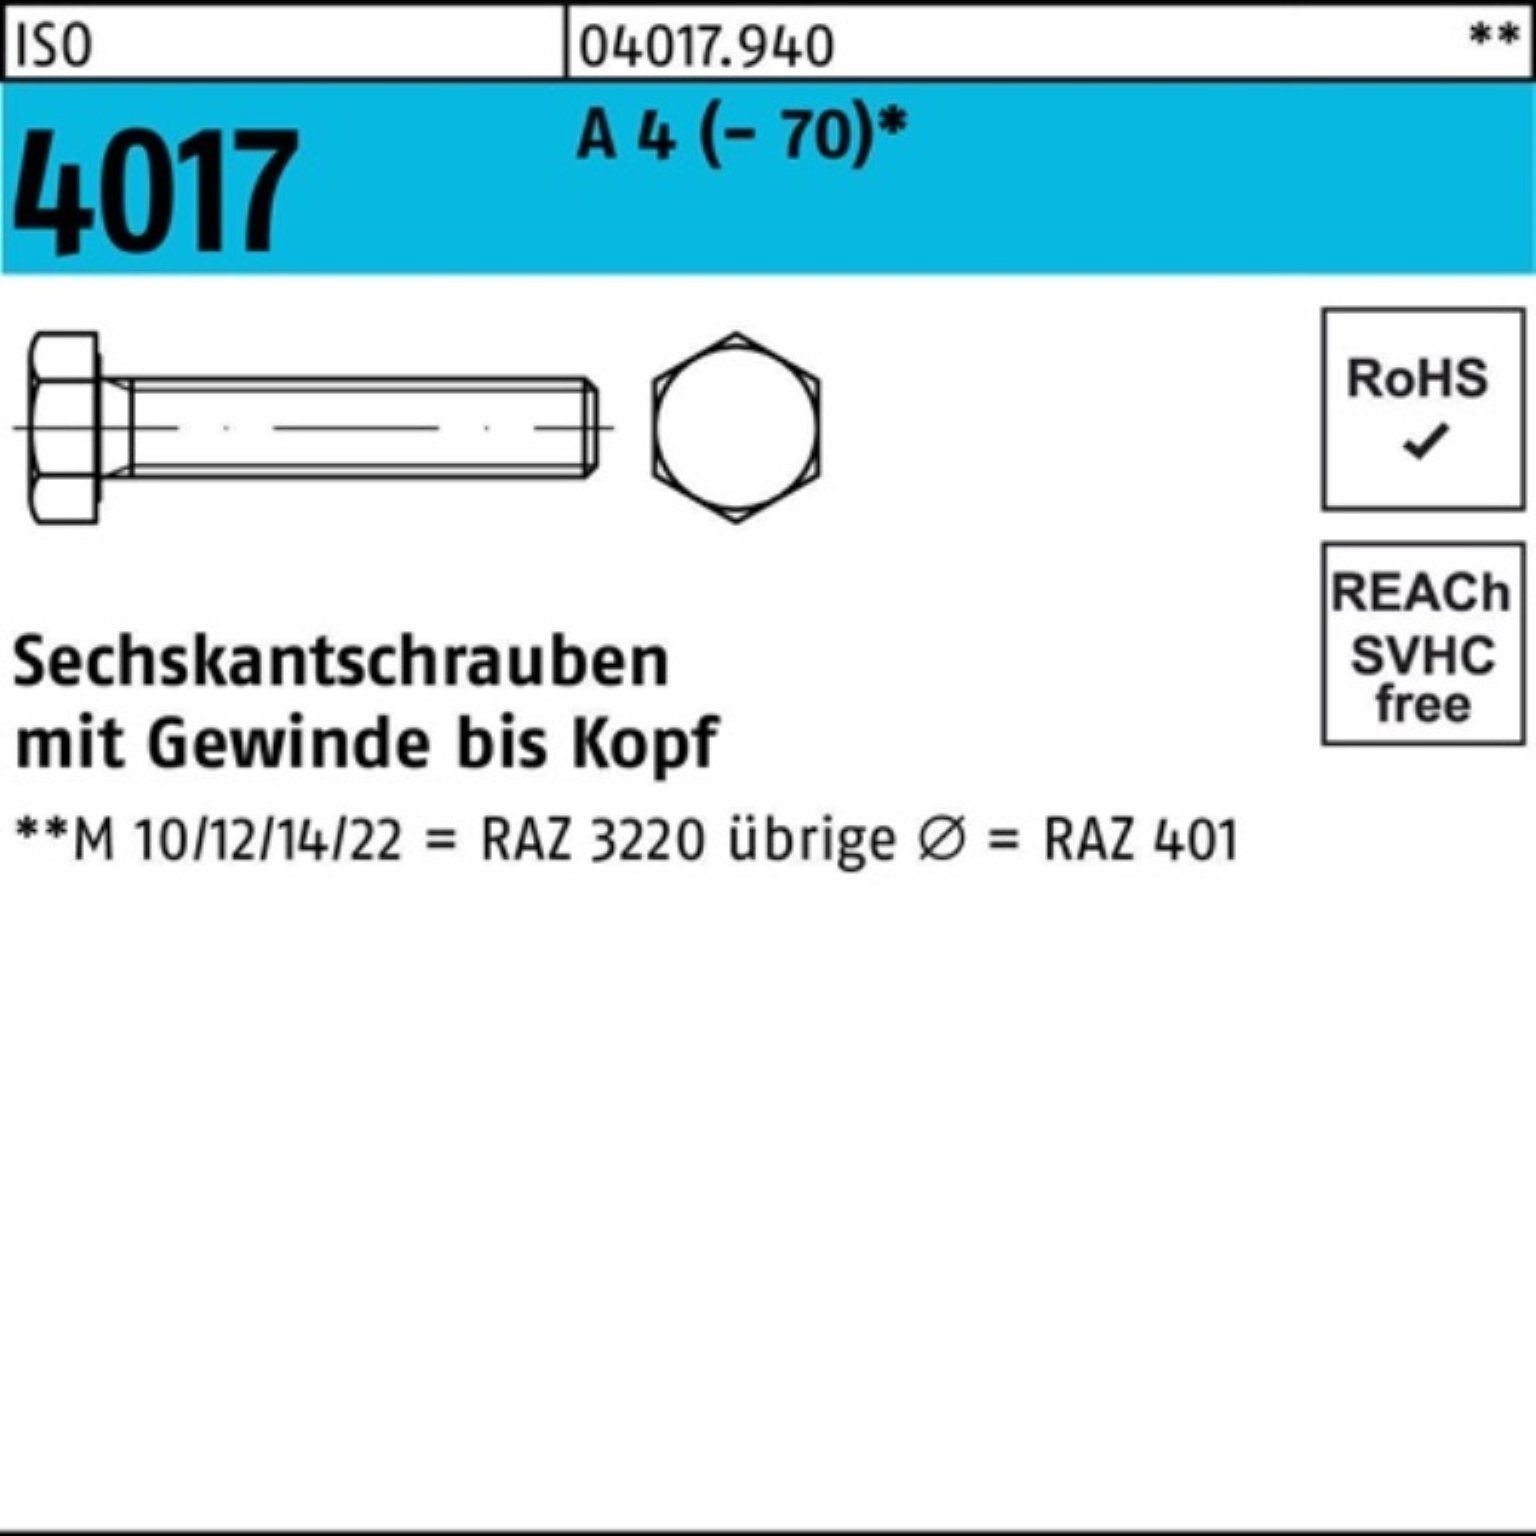 Bufab Sechskantschraube 500er Pack ISO VG 500 M5x 4 10 Sechskantschraube Stück (70) 4017 A